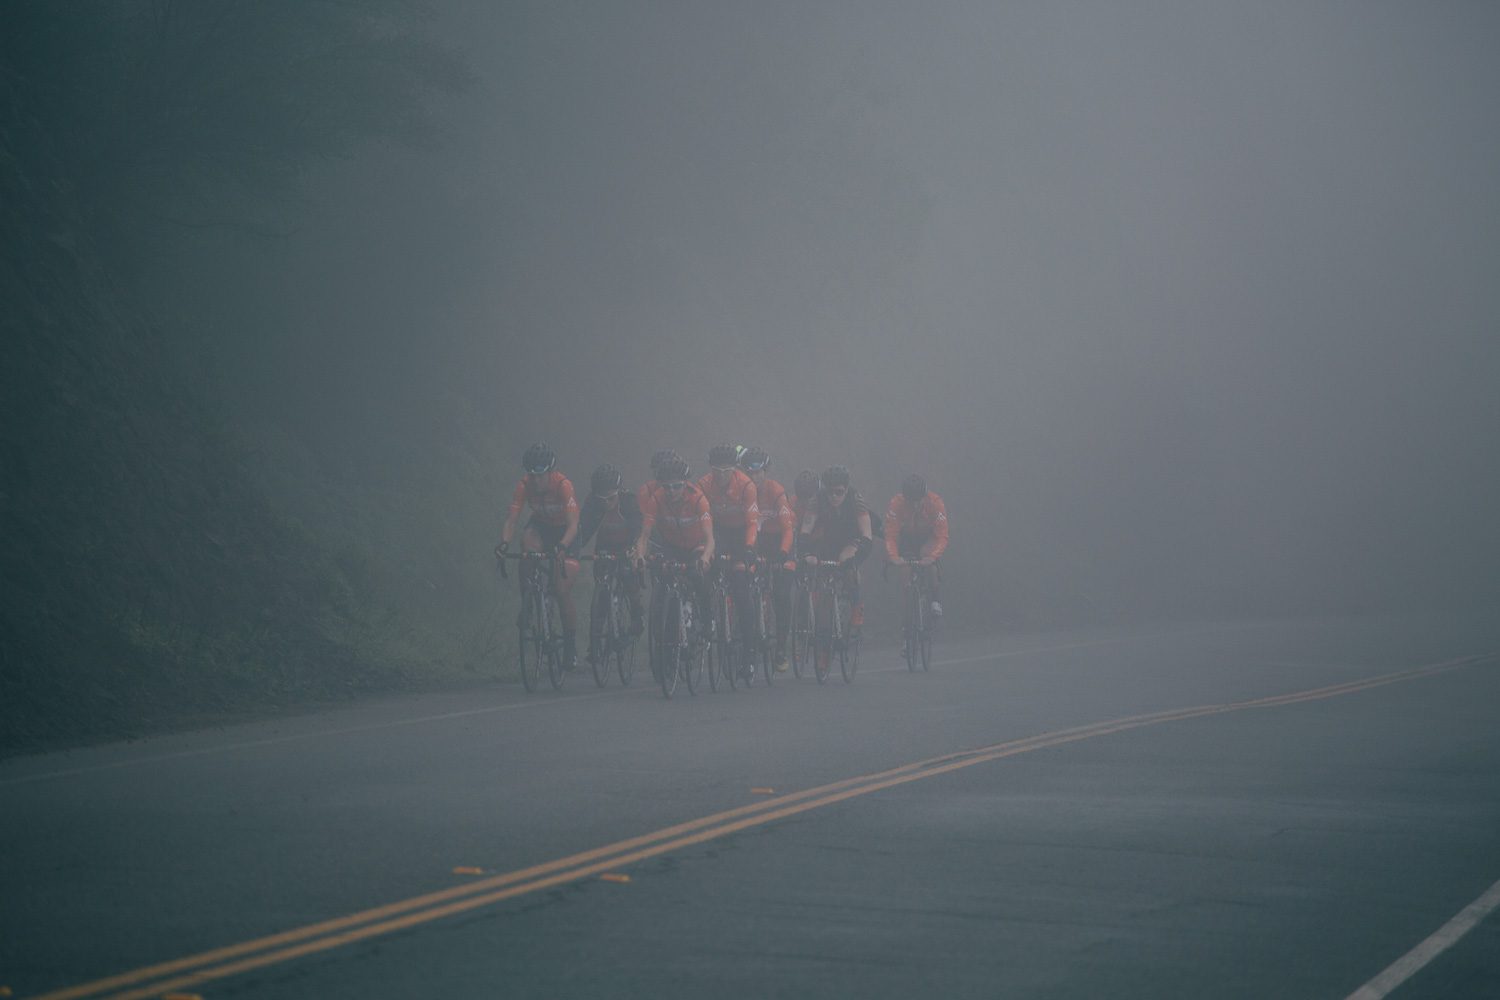 The team rides through the damp fog